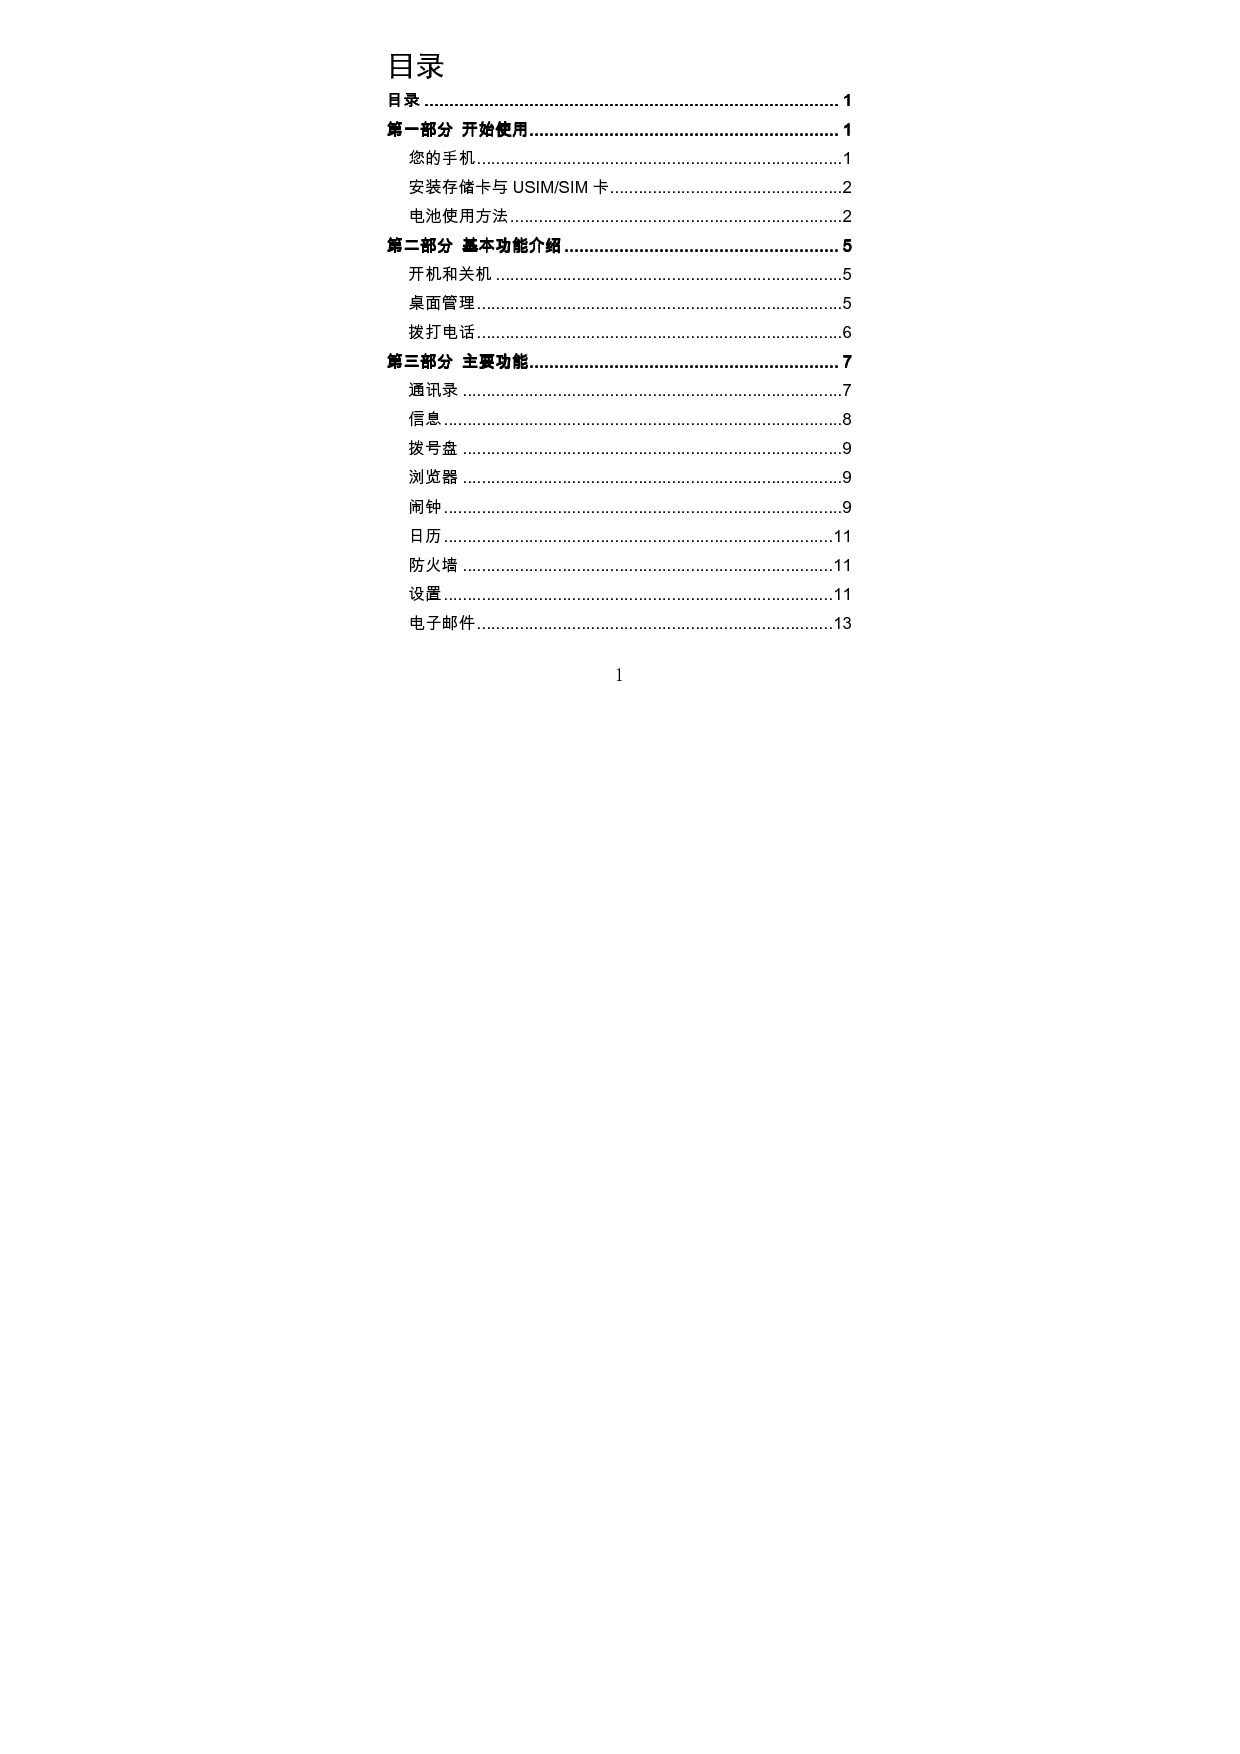 海信 Hisense HS-T818 用户指南 第1页